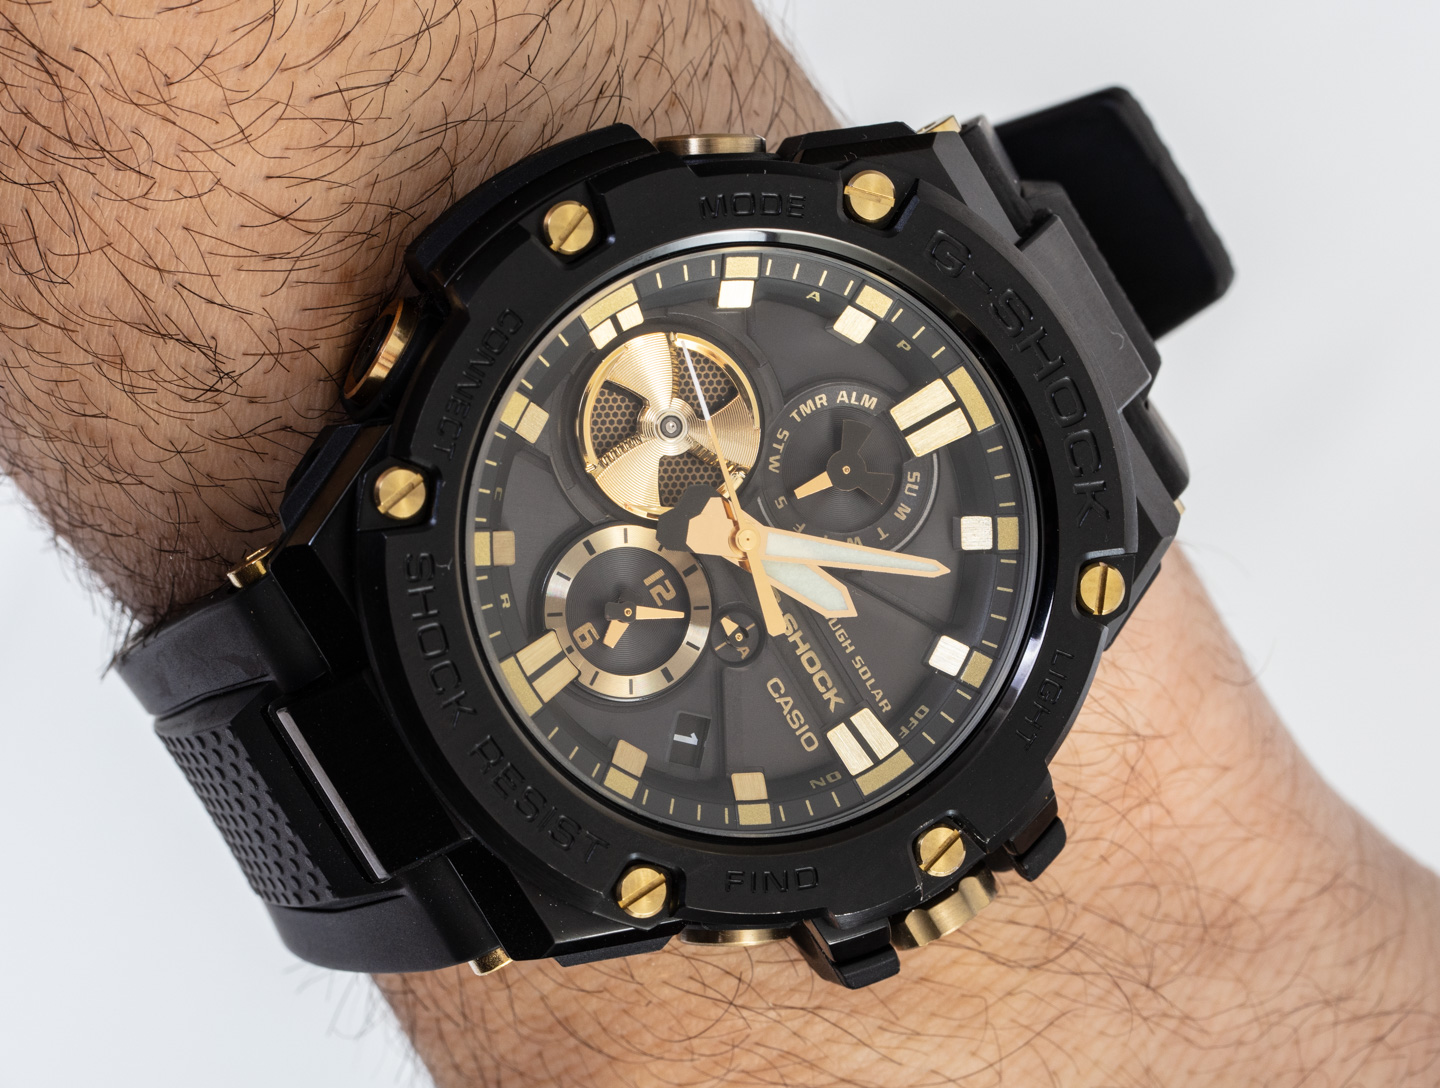 Hands-On: Casio G-Shock G-Steel GSTB100GC-1A Black & Gold Watch